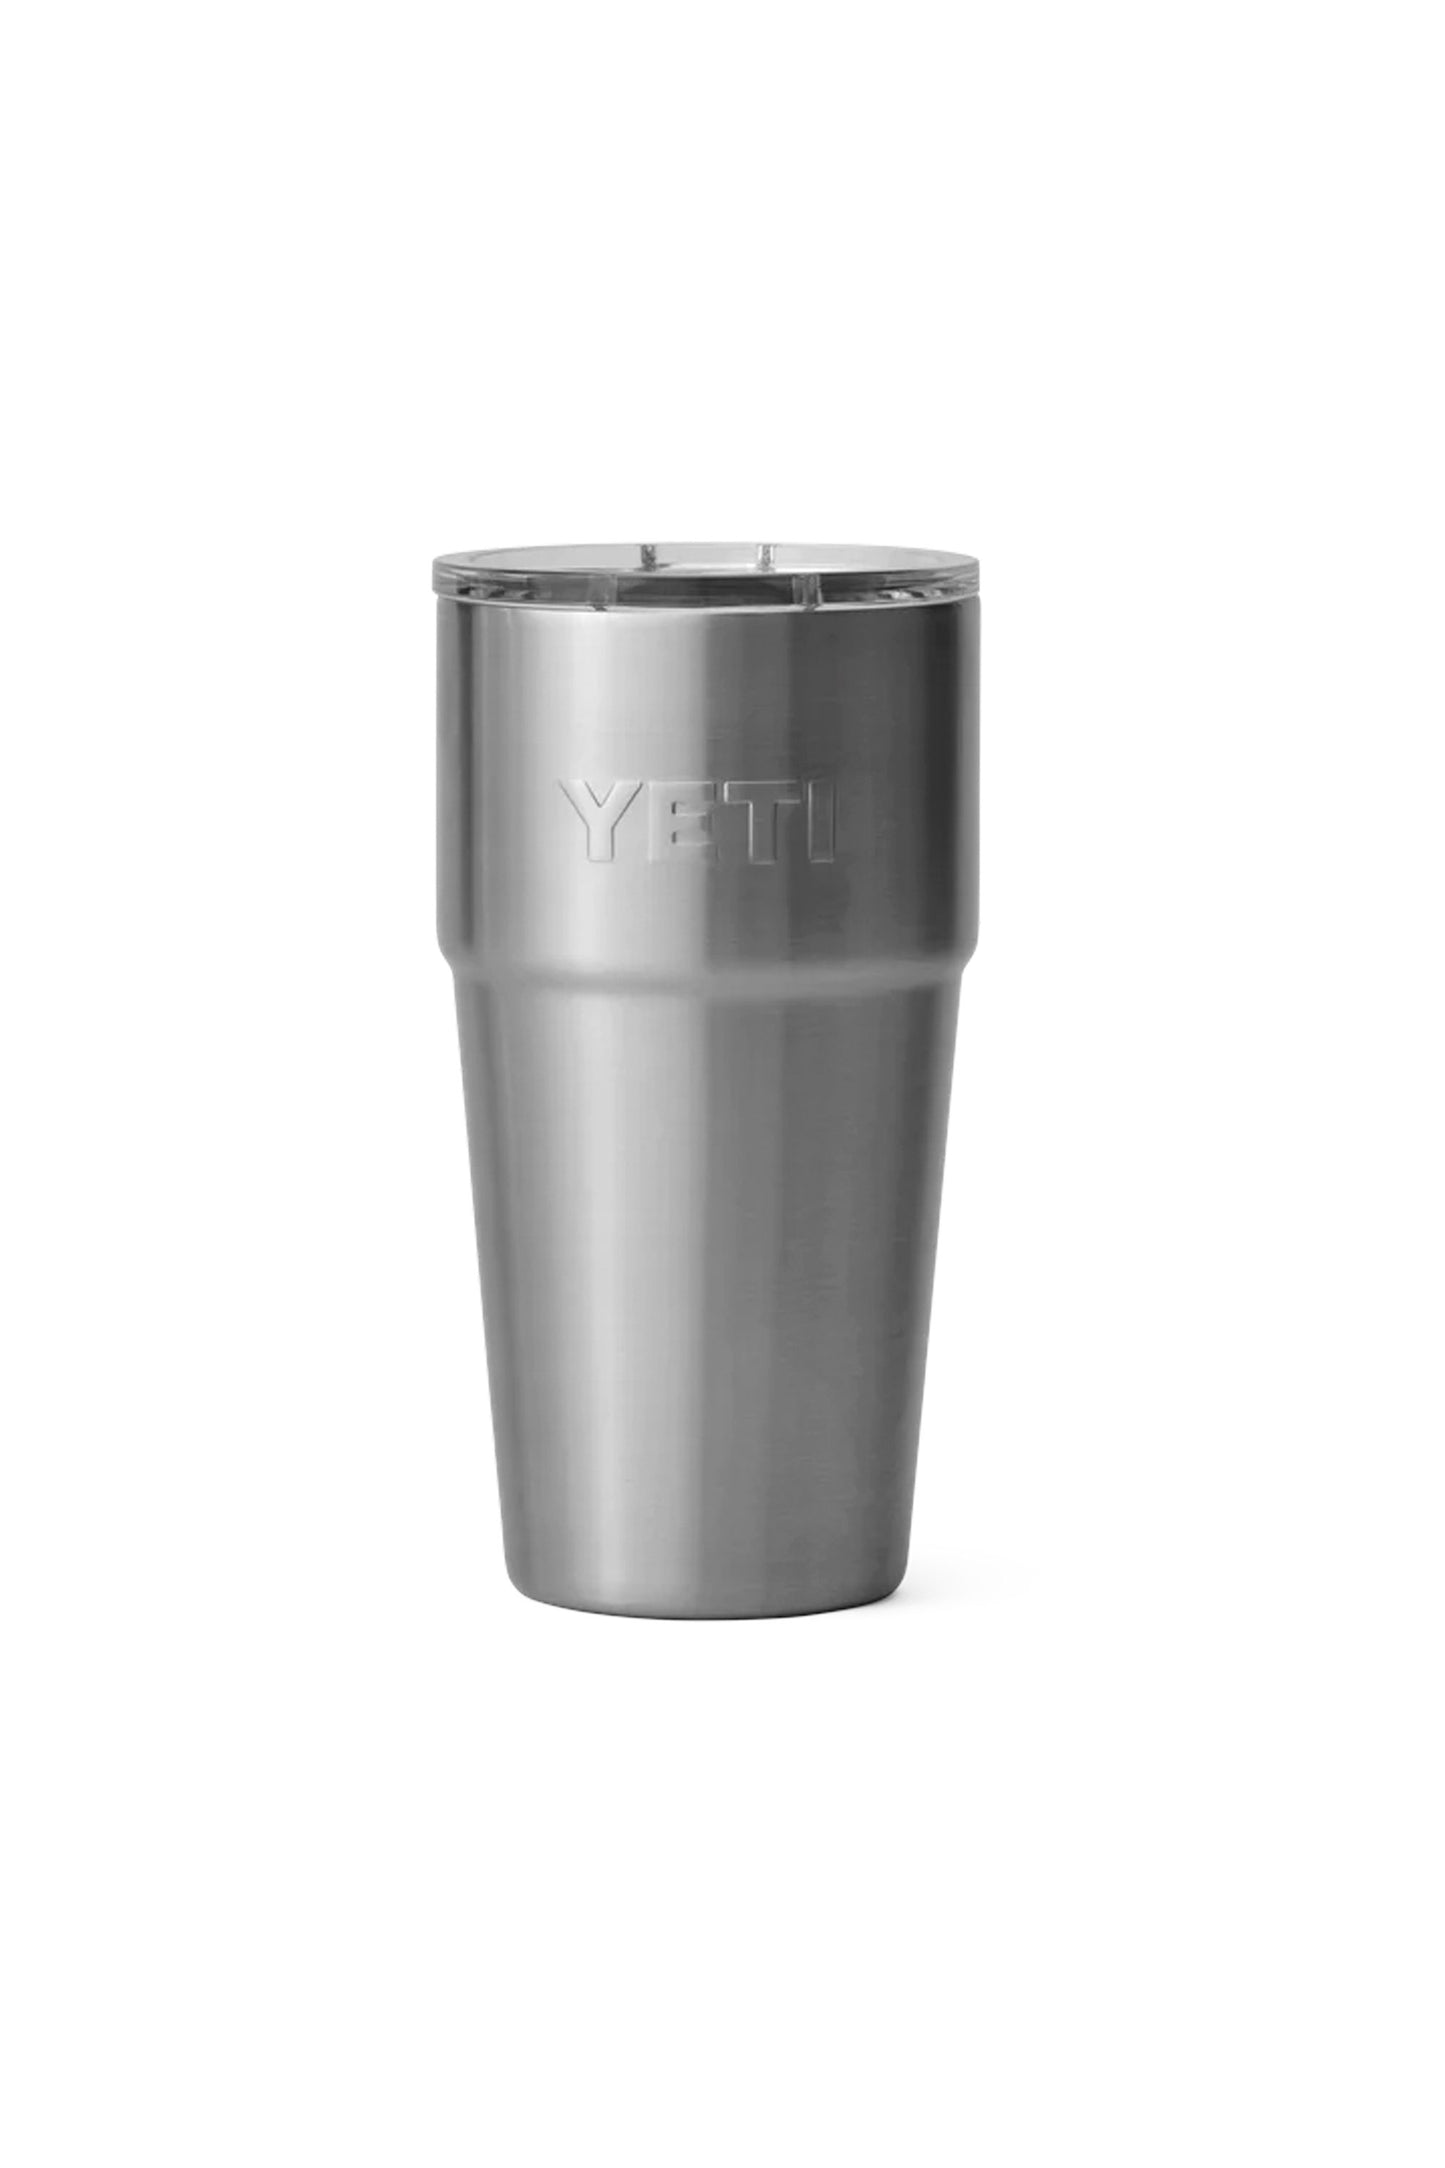 YETI - Rambler Pint Cup - 16oz